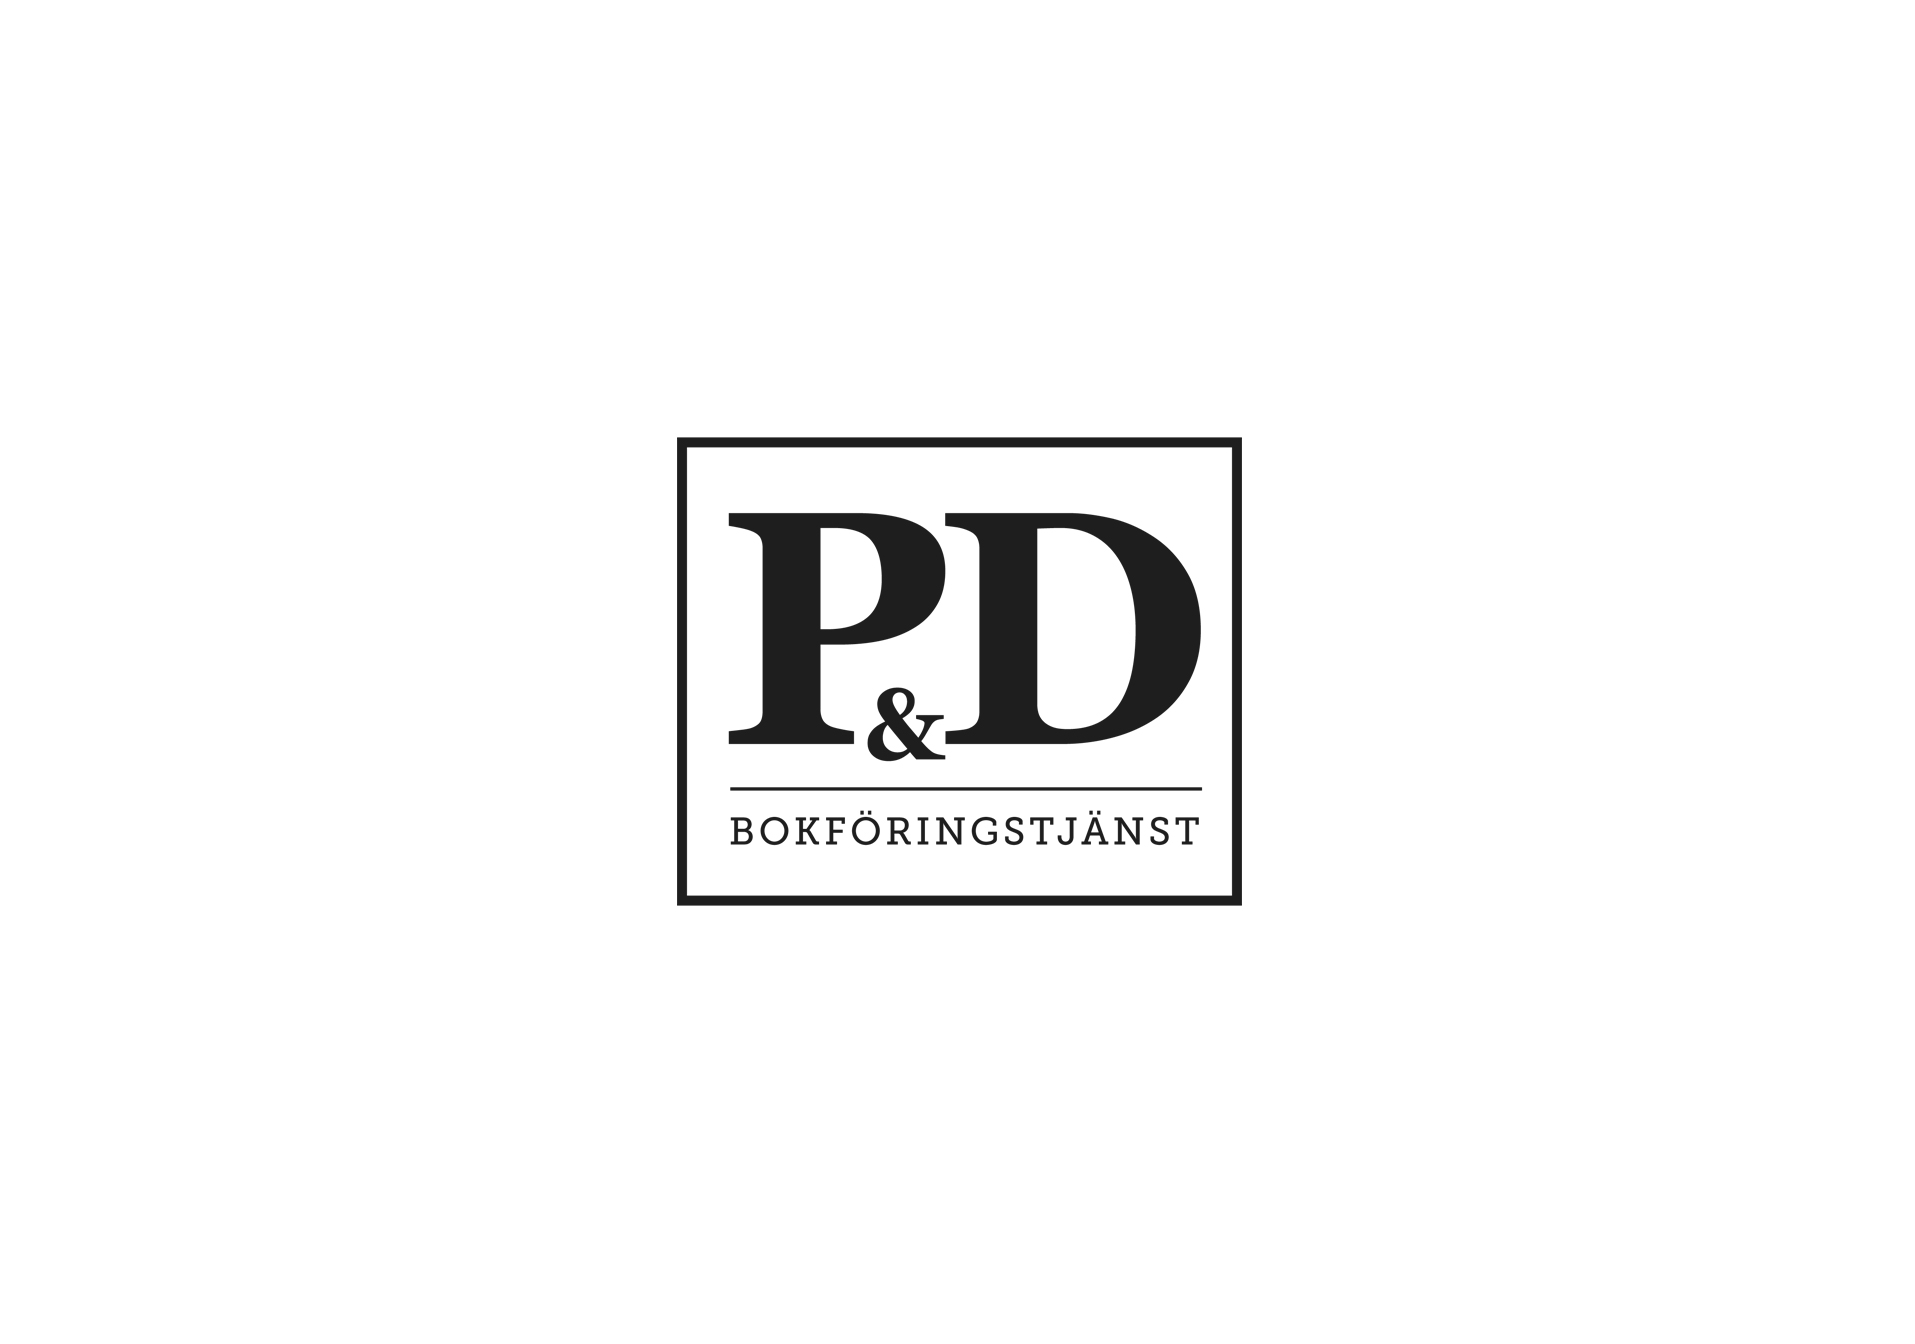 pd-logo